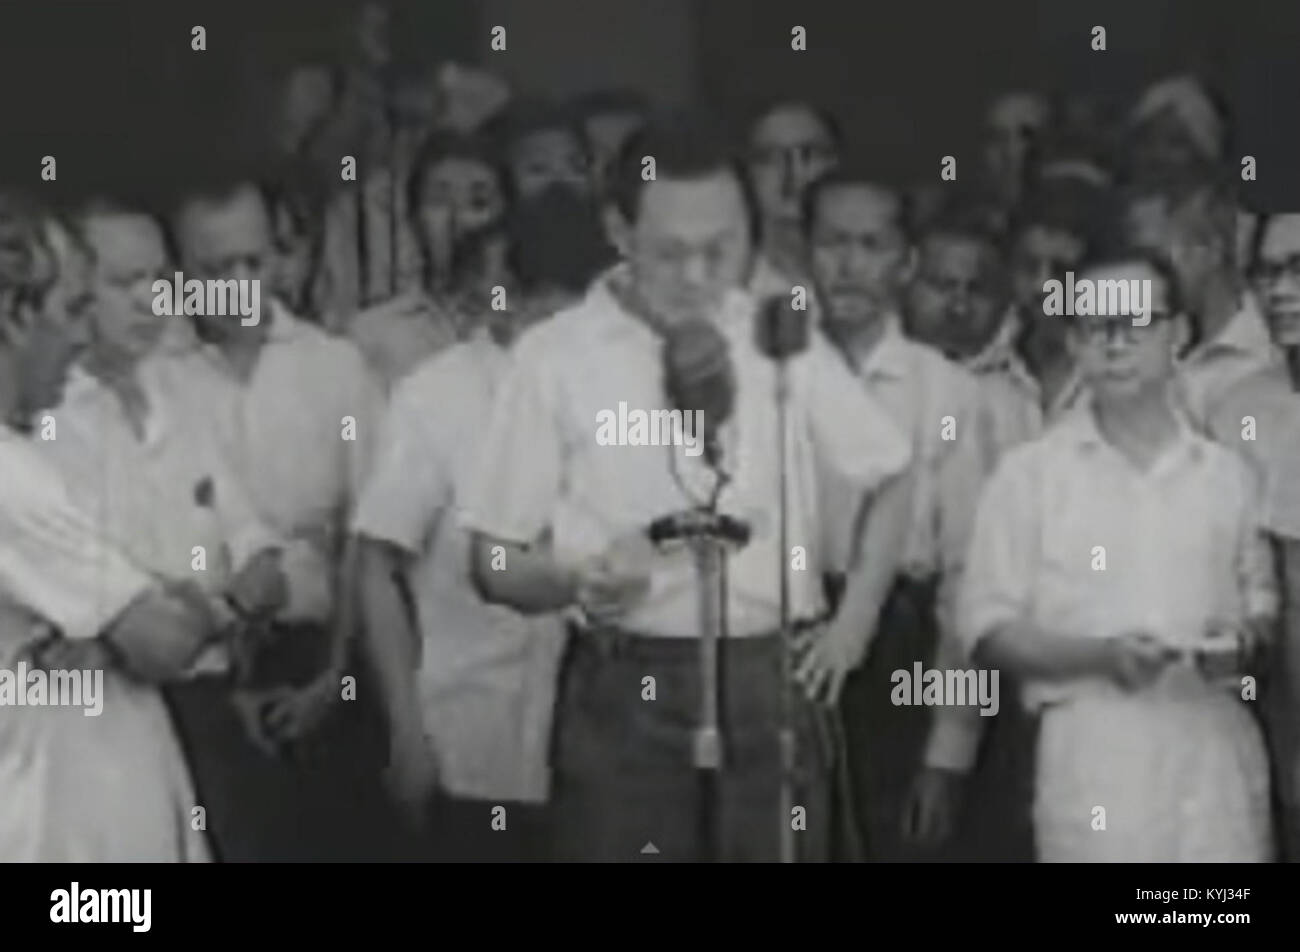 16 september 1963 malaysia